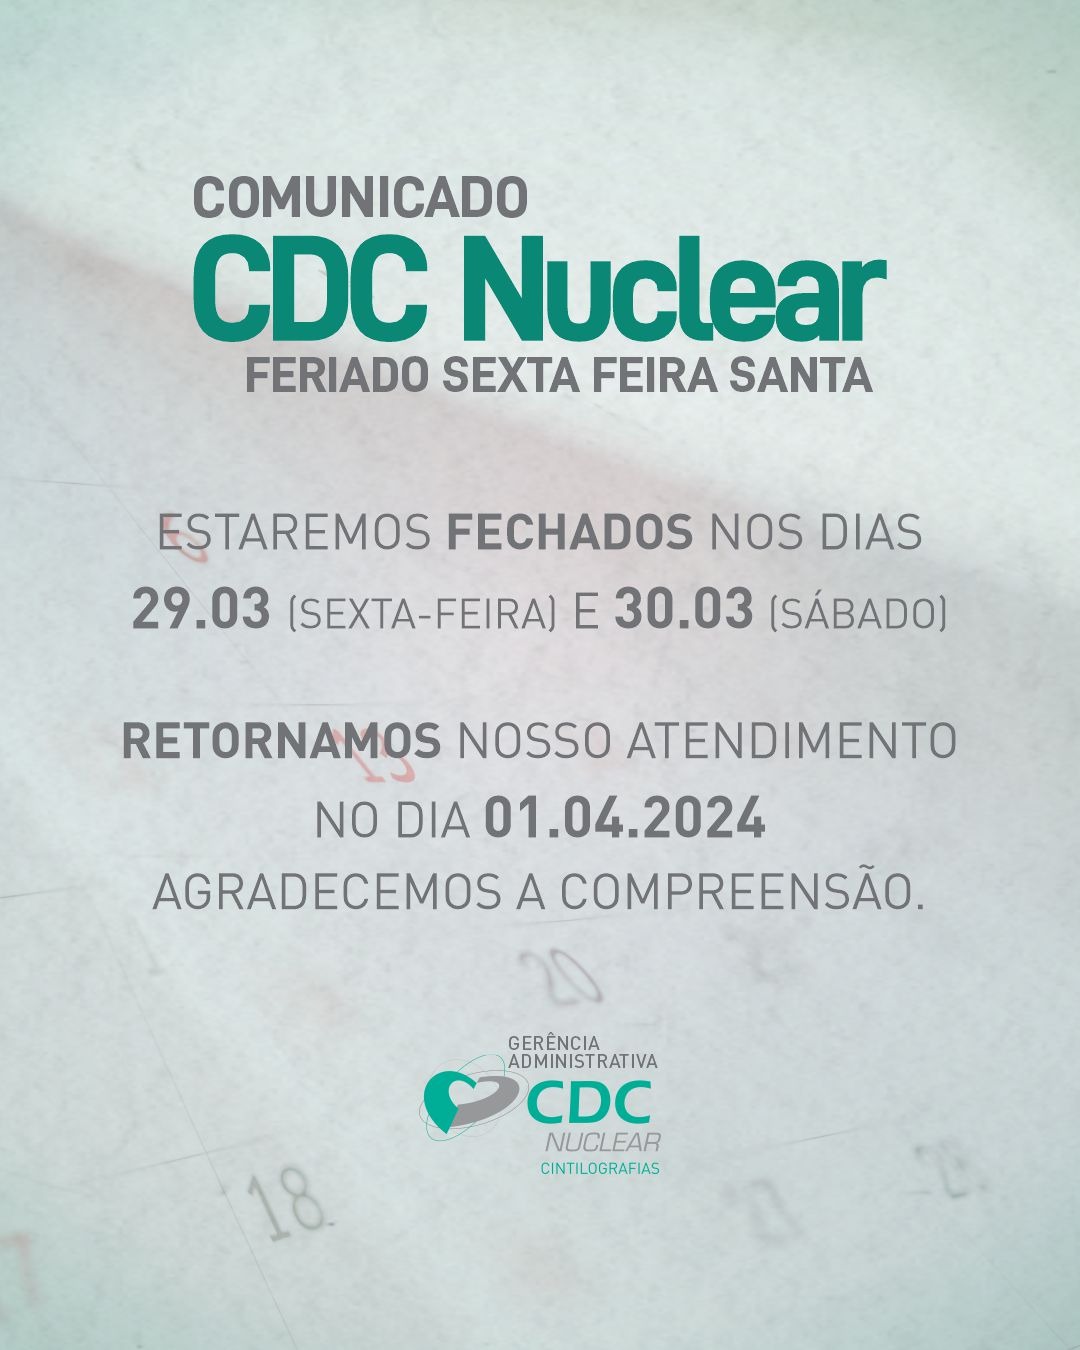 CDC-Nuclear-Feriado-Sexta-Santa-2024